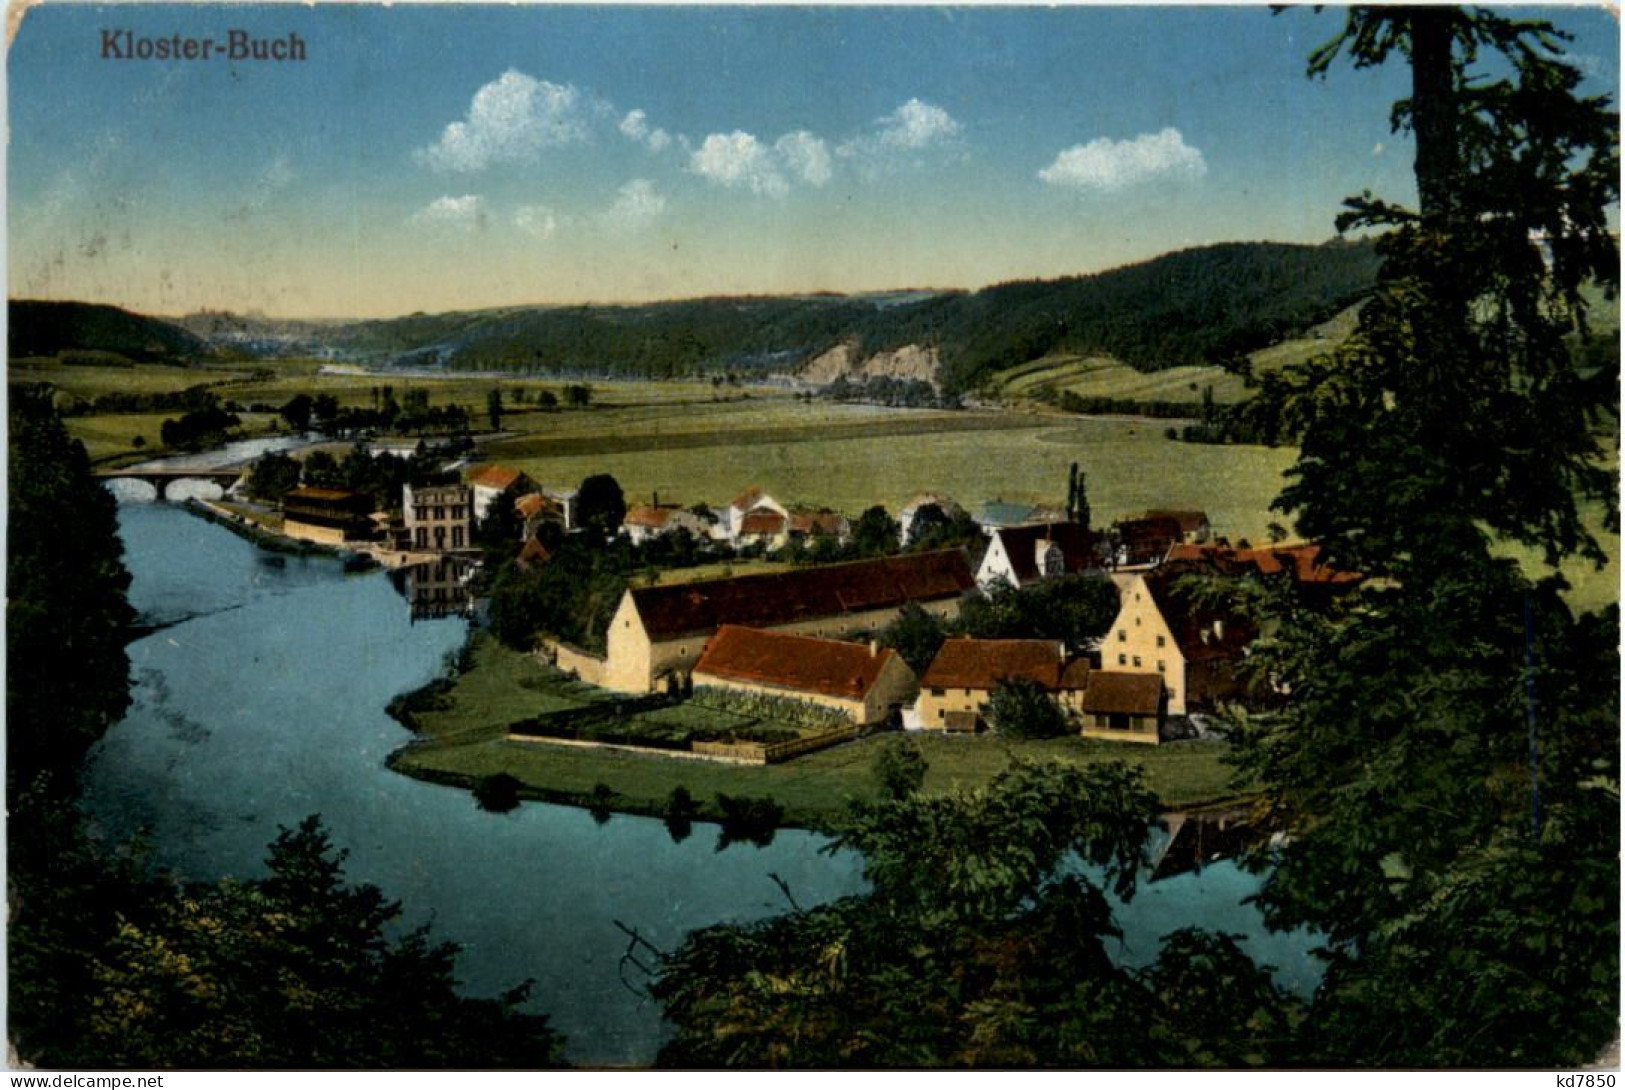 Kloster-Buch - Leisnig